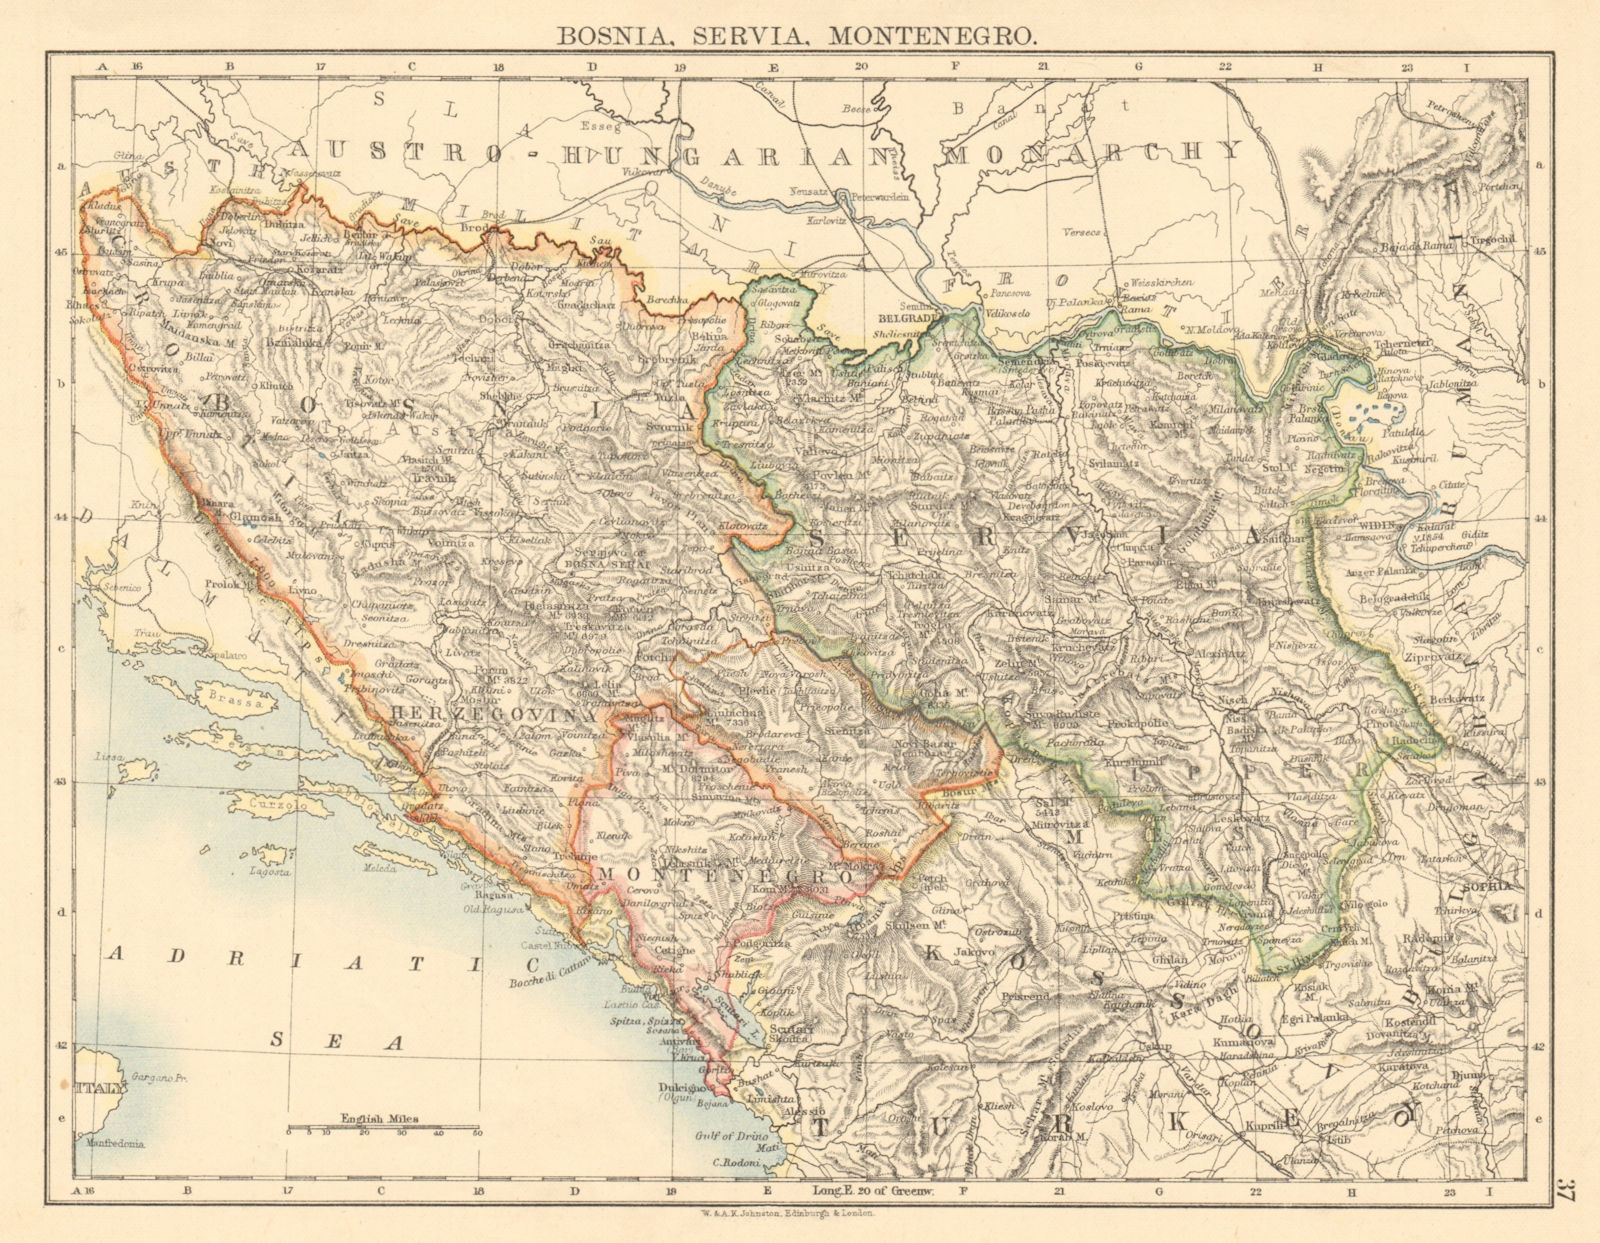 BOSNIA SERVIA MONTENEGRO Balkans Serbia Croatia Herzegovina JOHNSTON 1892 map